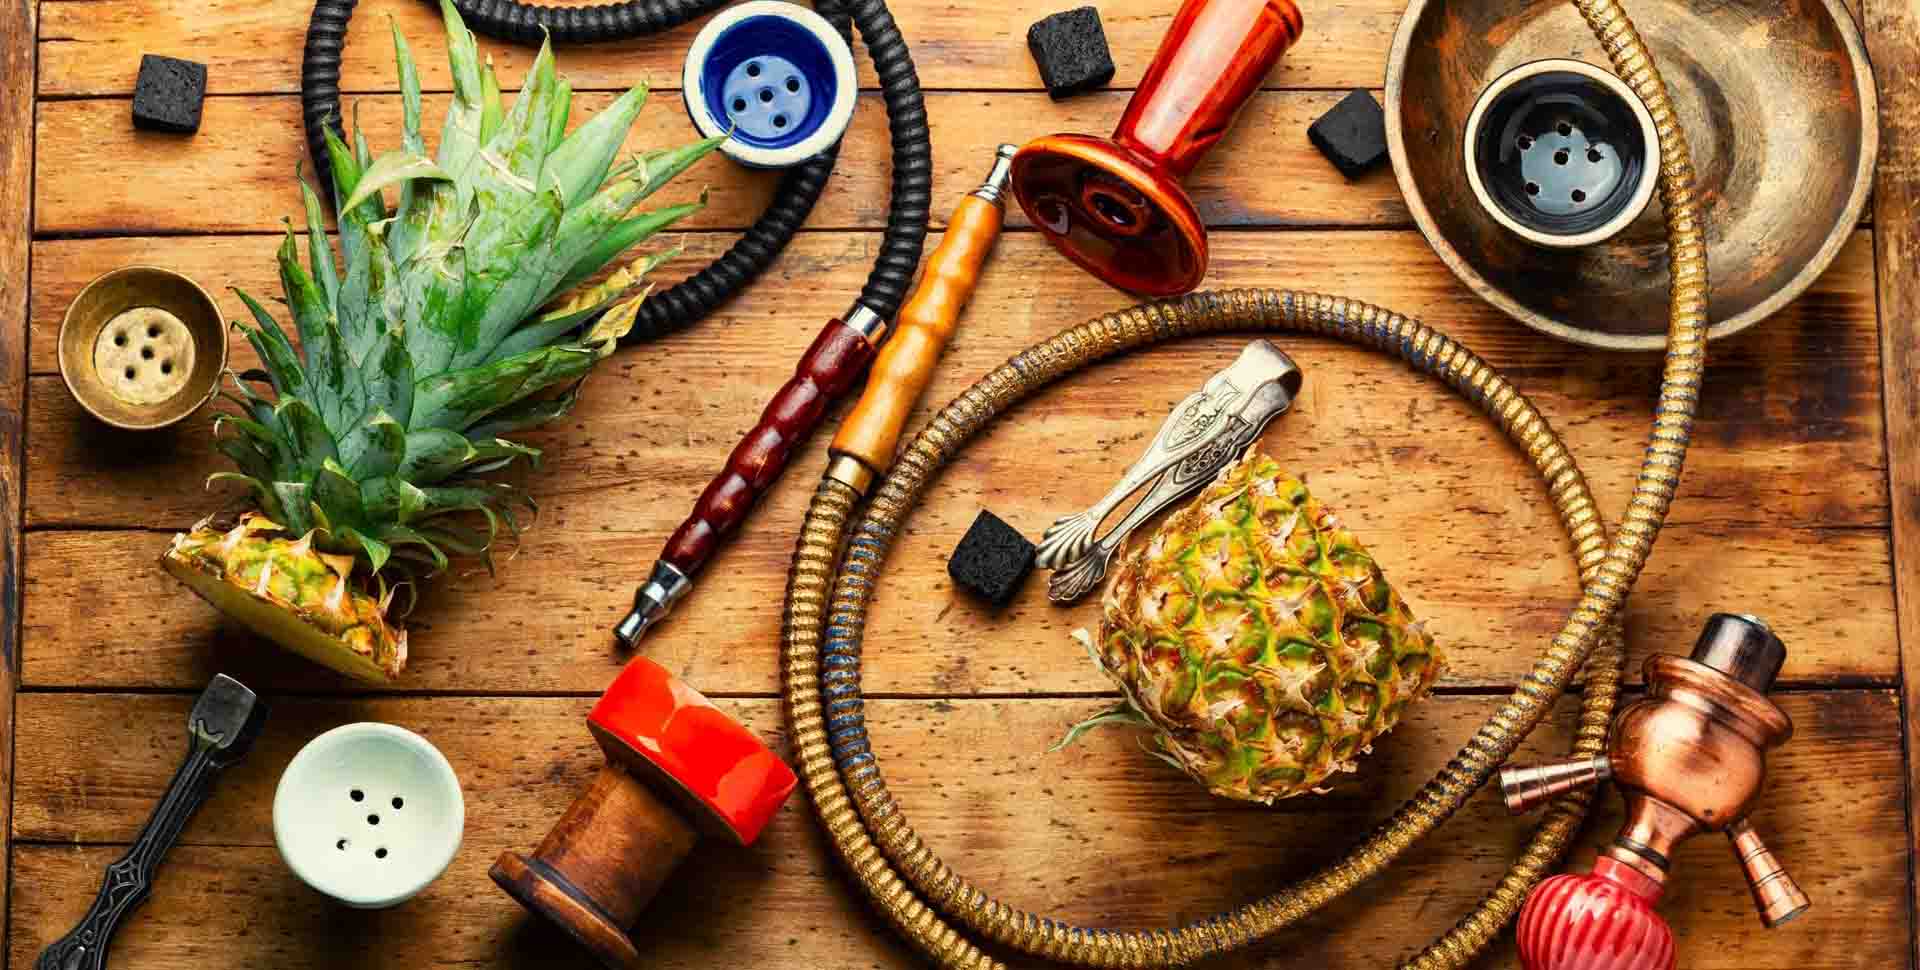 Komponenty vodnej fajky: korunky, hadice, kliešte, uhlíky a prekrojený ananás